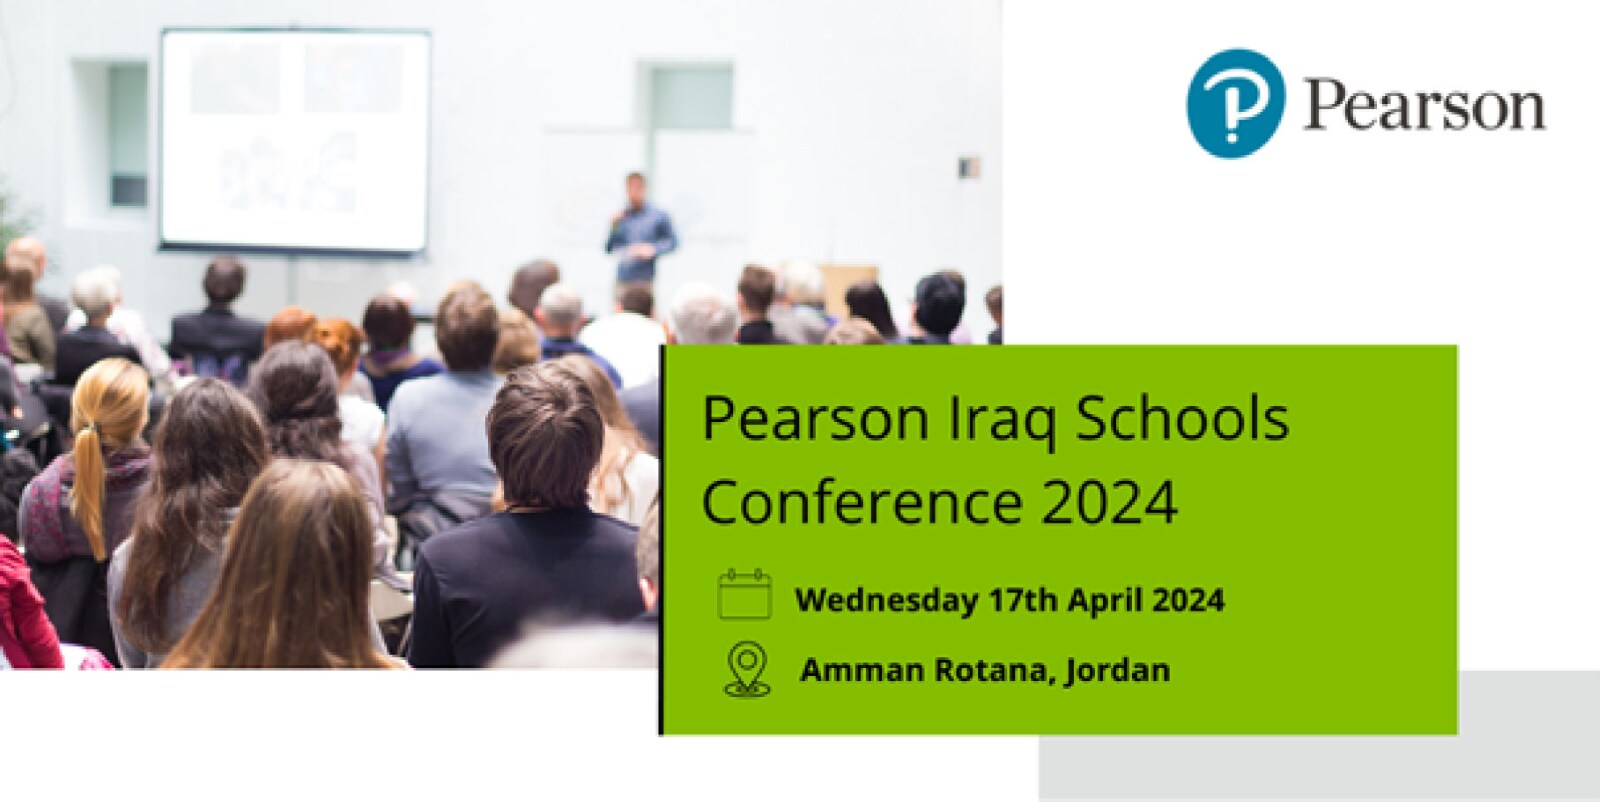 Pearson Iraq Schools Conference 2024 